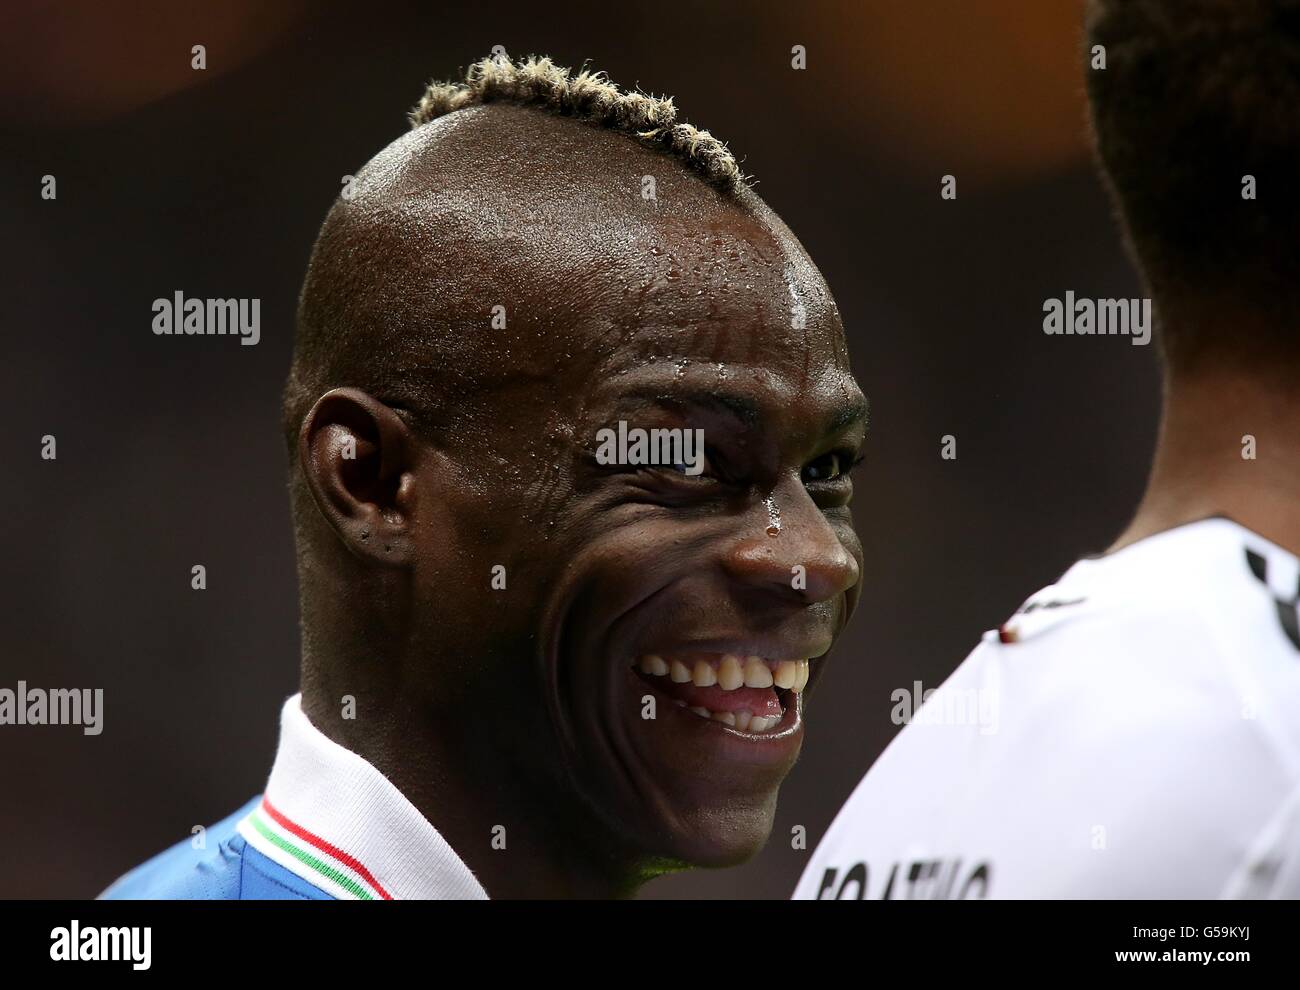 Soccer - UEFA Euro 2012 - Semi Final - Germany v Italy - National Stadium. Italy's Mario Balotelli Stock Photo